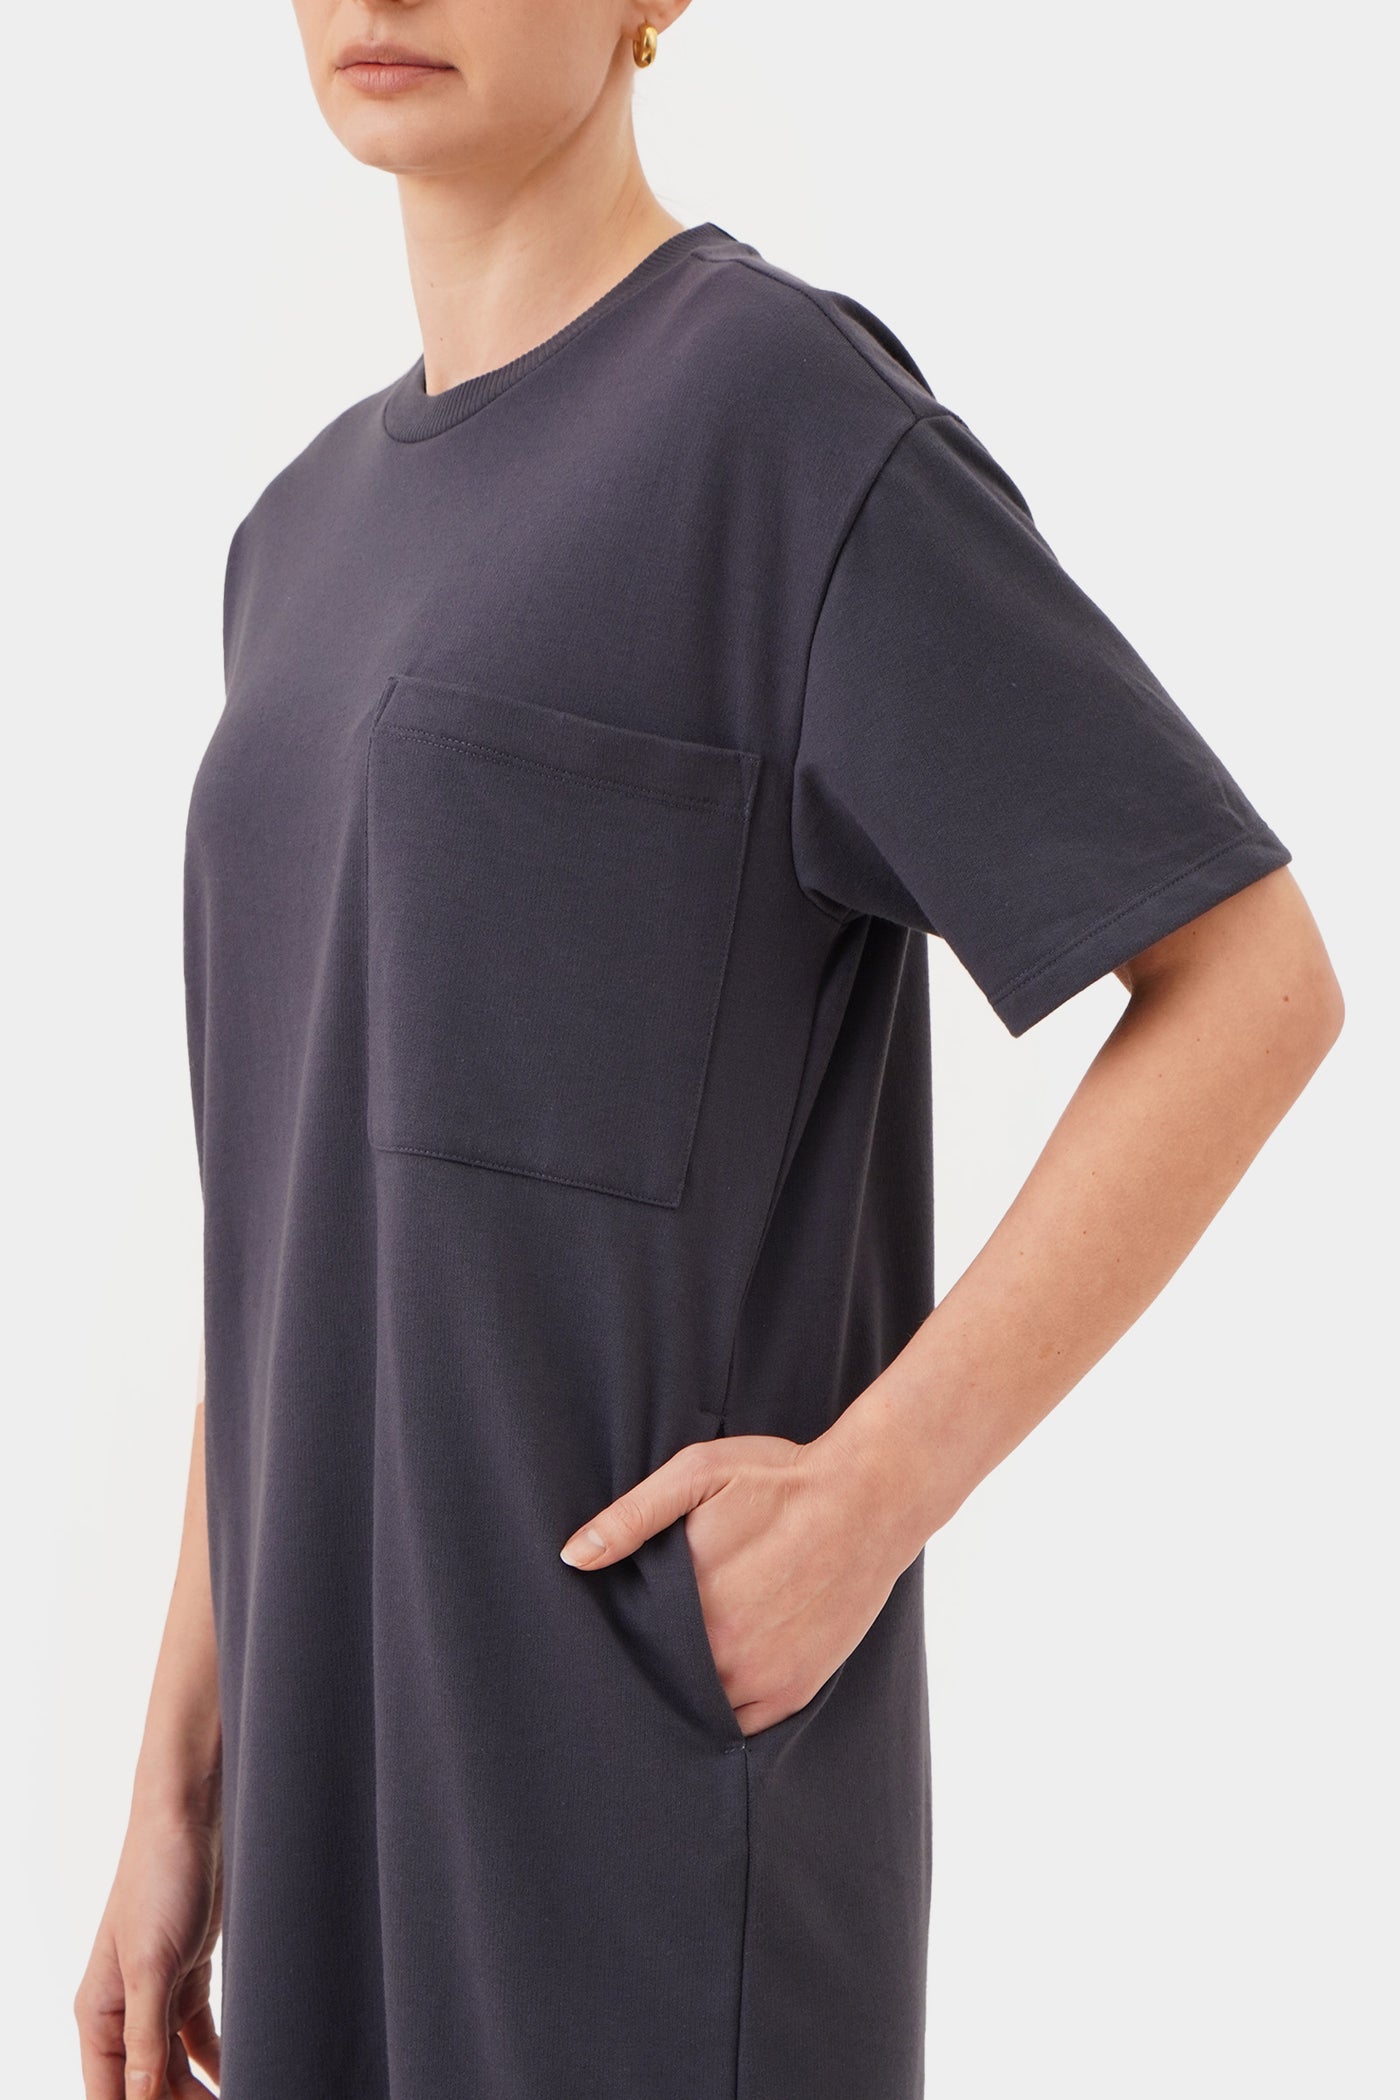 Women's Everywear Boxy T-Shirt Dress with Pocket